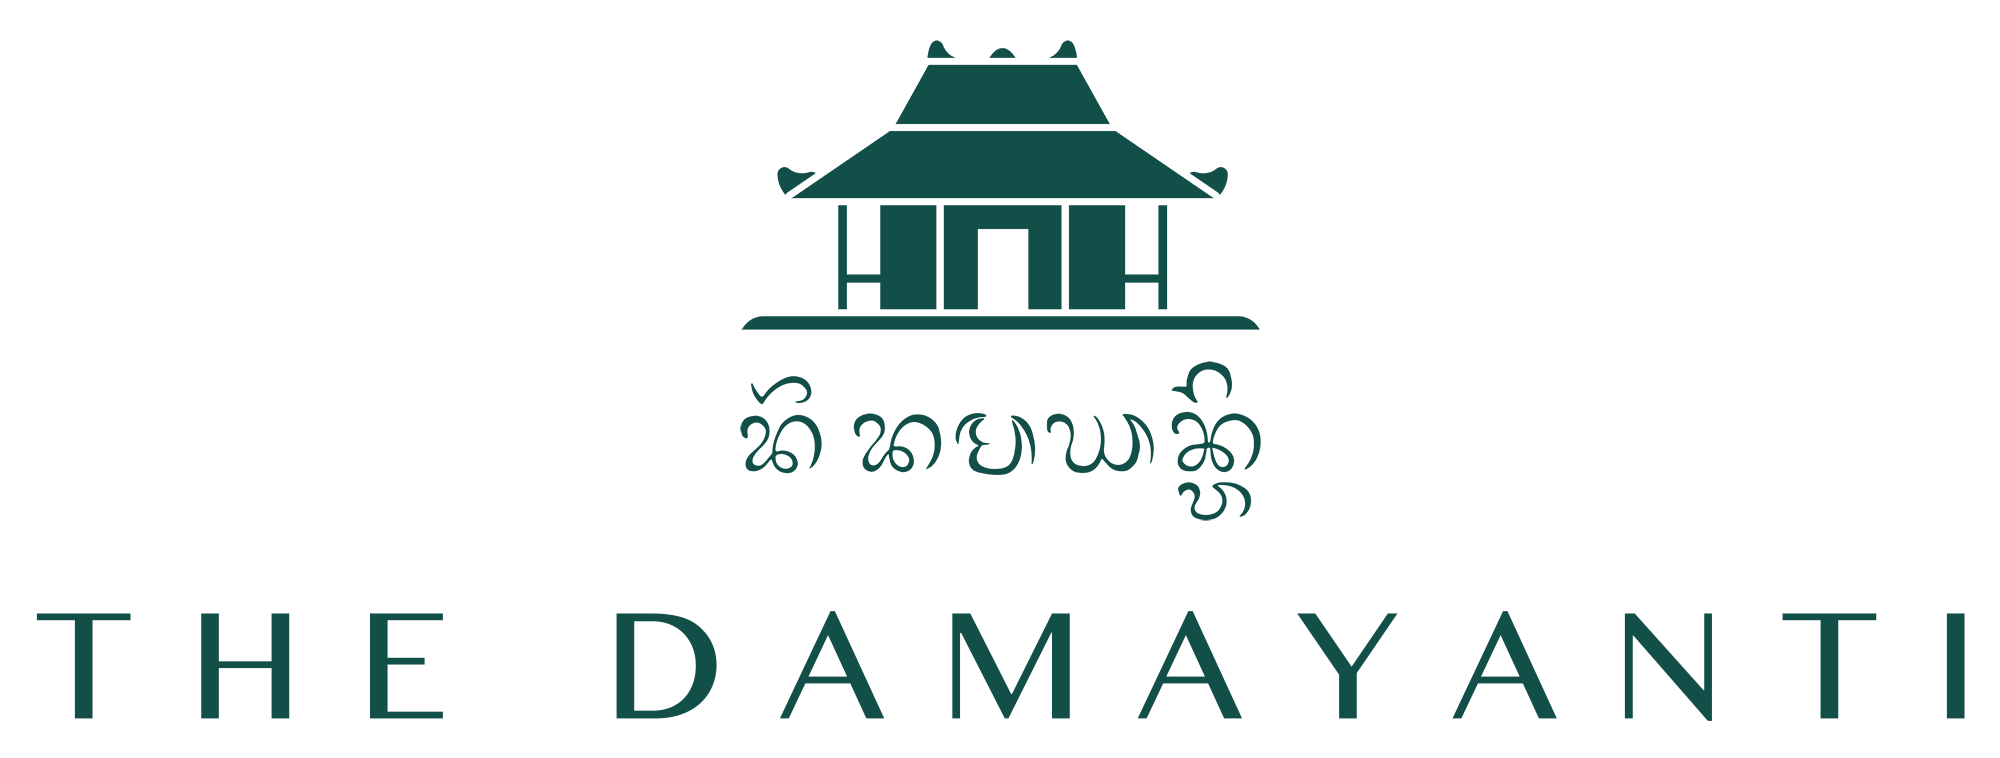 The Damayanti